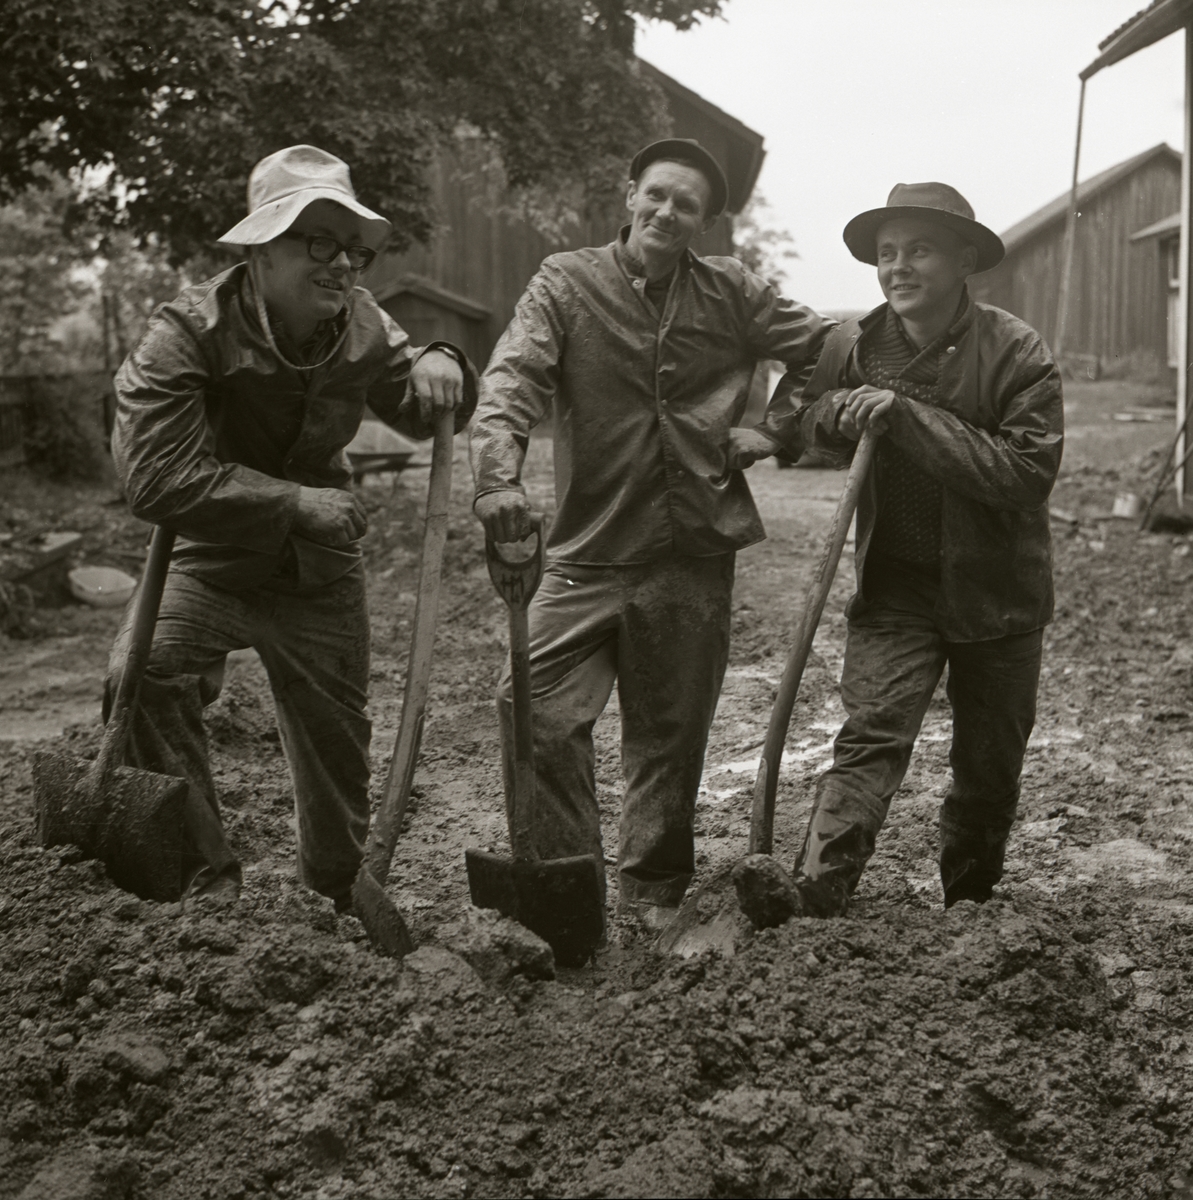 Hilding och sönerna står och lutar sig mot varsin spade i en jordhög, 1967.